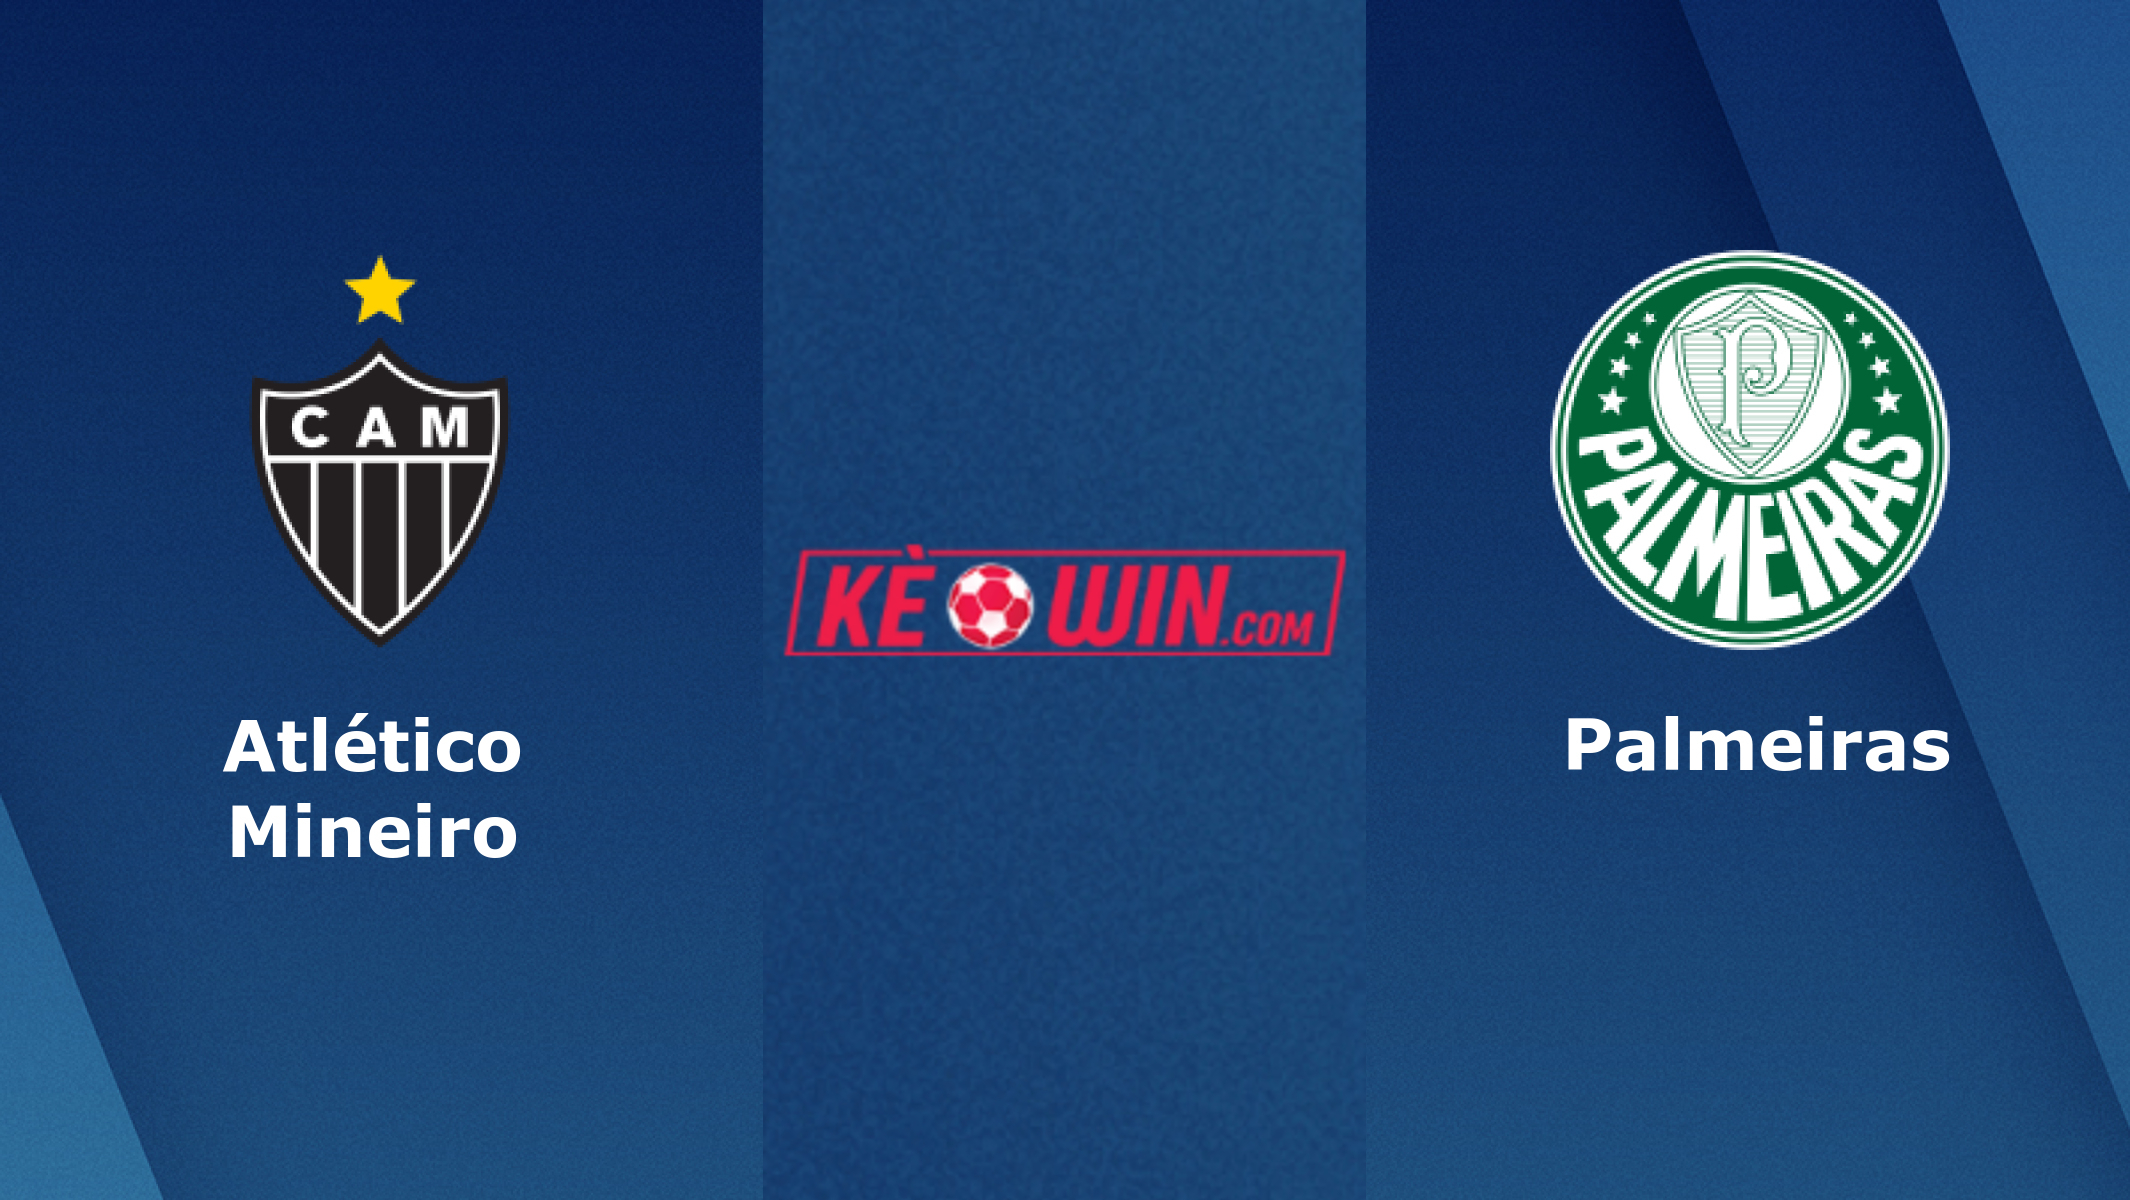 Atletico-MG vs Palmeiras – Nhận định kèo bóng đá 07h45 29/09/2022 – VĐQG Brazil